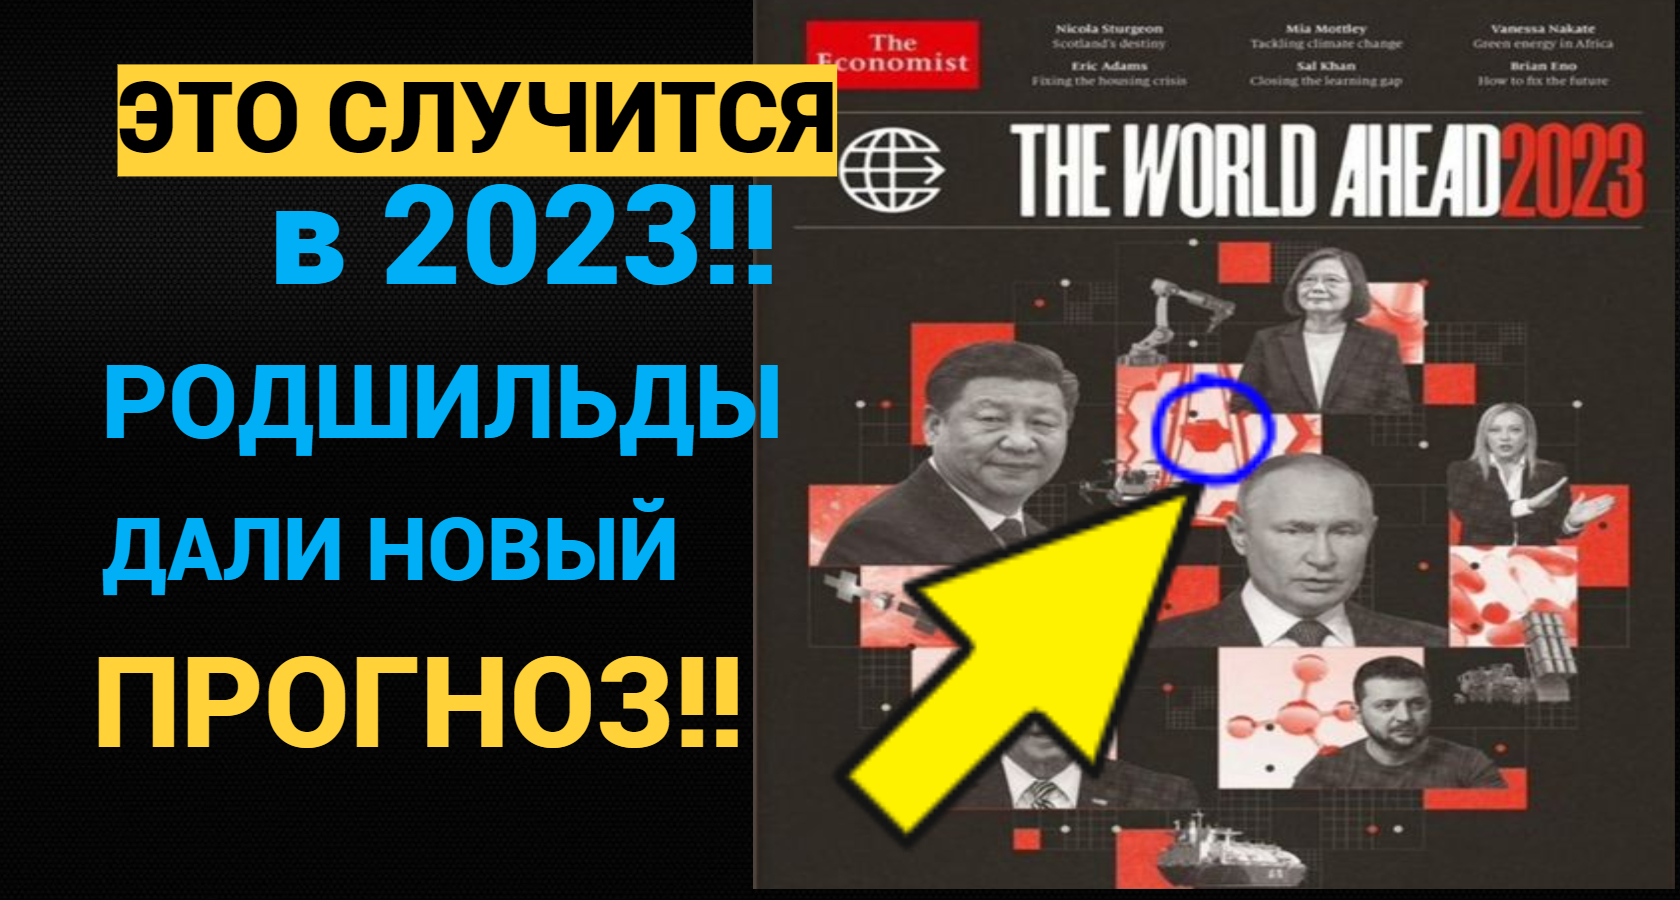 Предсказание на 2024 по дате. Обложка экономист. Обложка журнала the Economist. Журнал экономист. Обложка журнала экономист 2023.